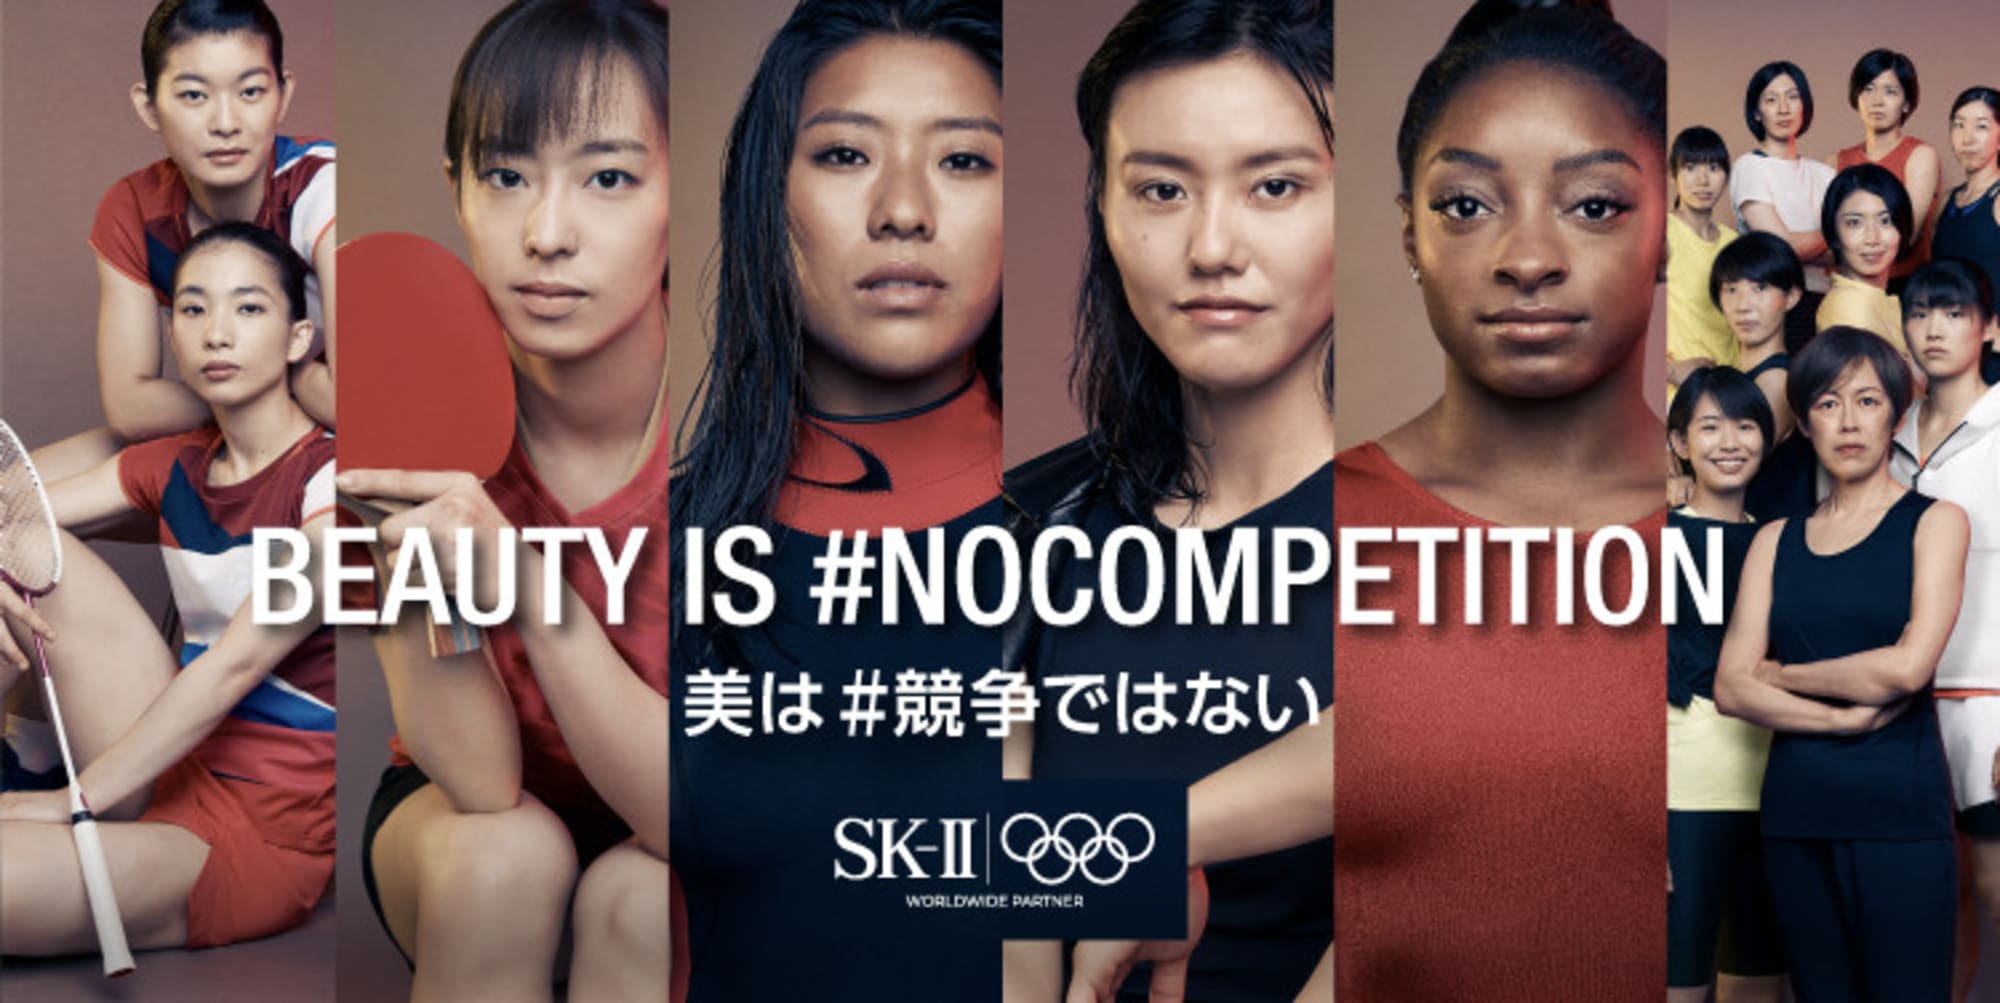 美の競争 に終わりを Sk が石川佳純らオリンピックアスリートと共に Nocompetitionキャンペーンを展開